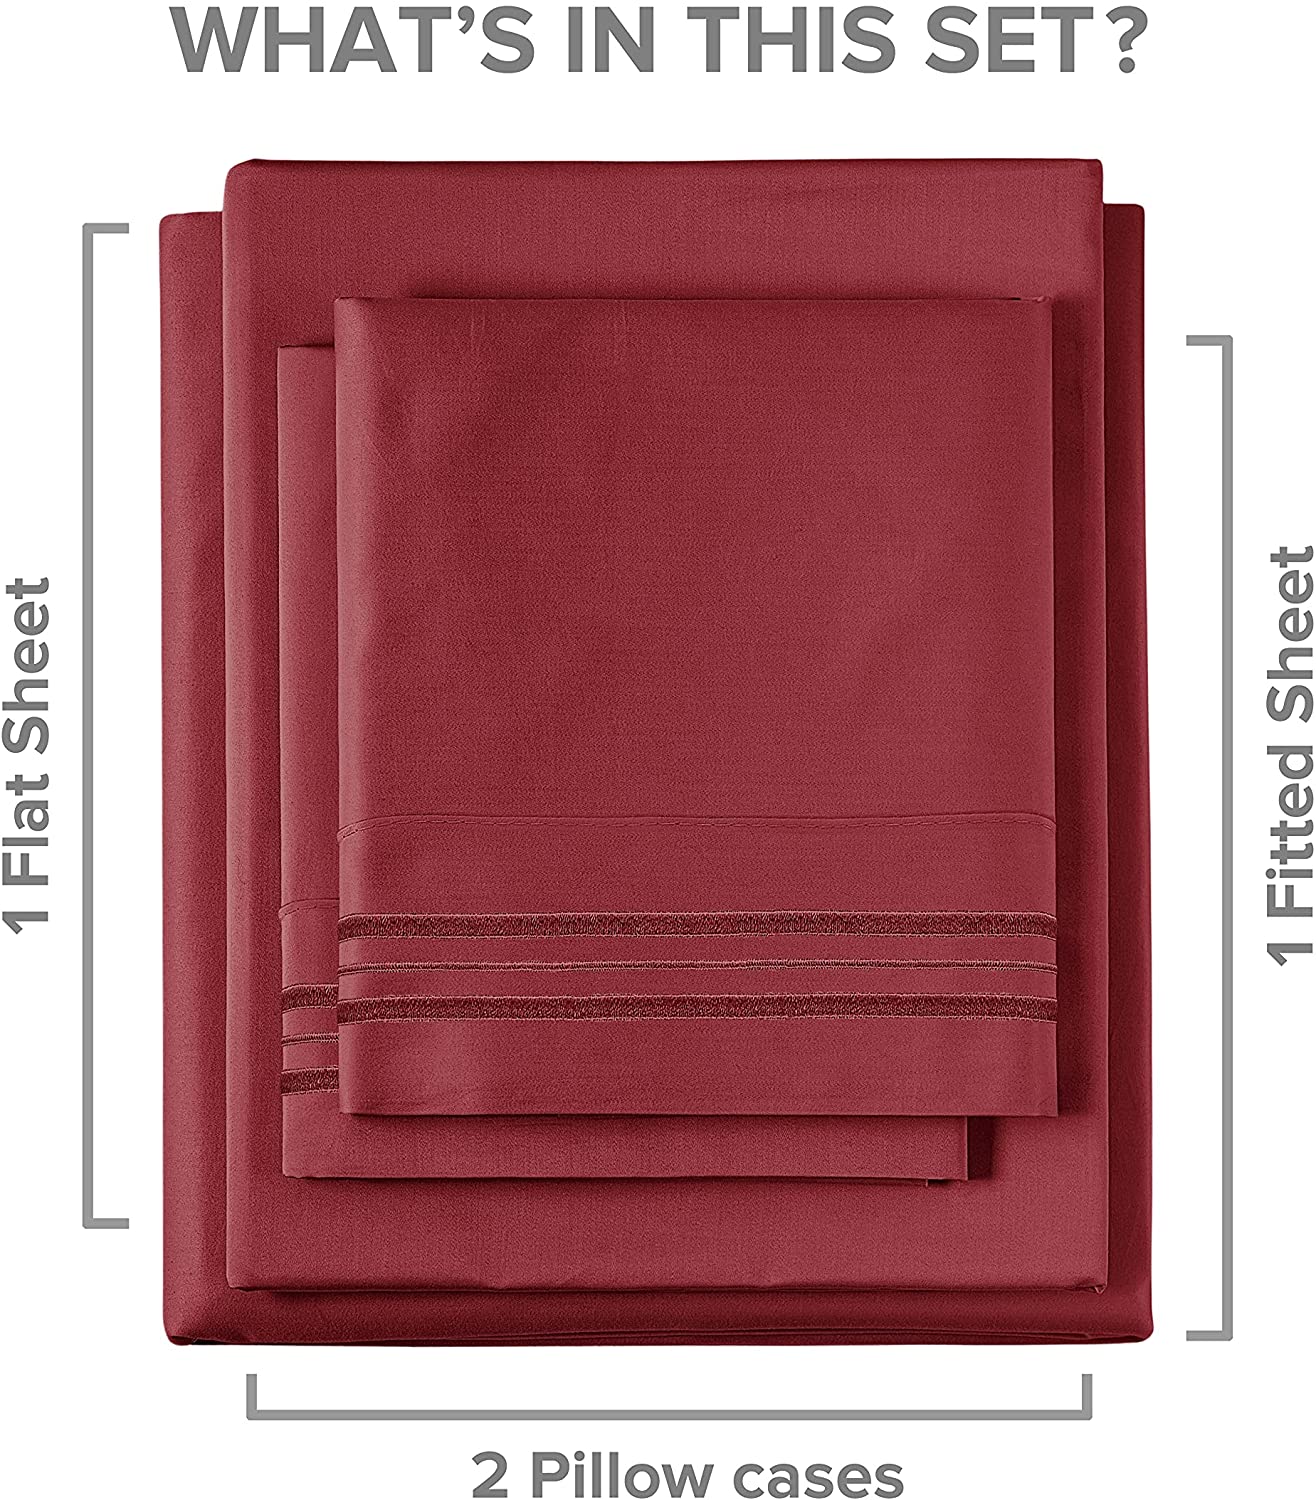 6 Piece Deep Pocket Sheet Set - Burgundy